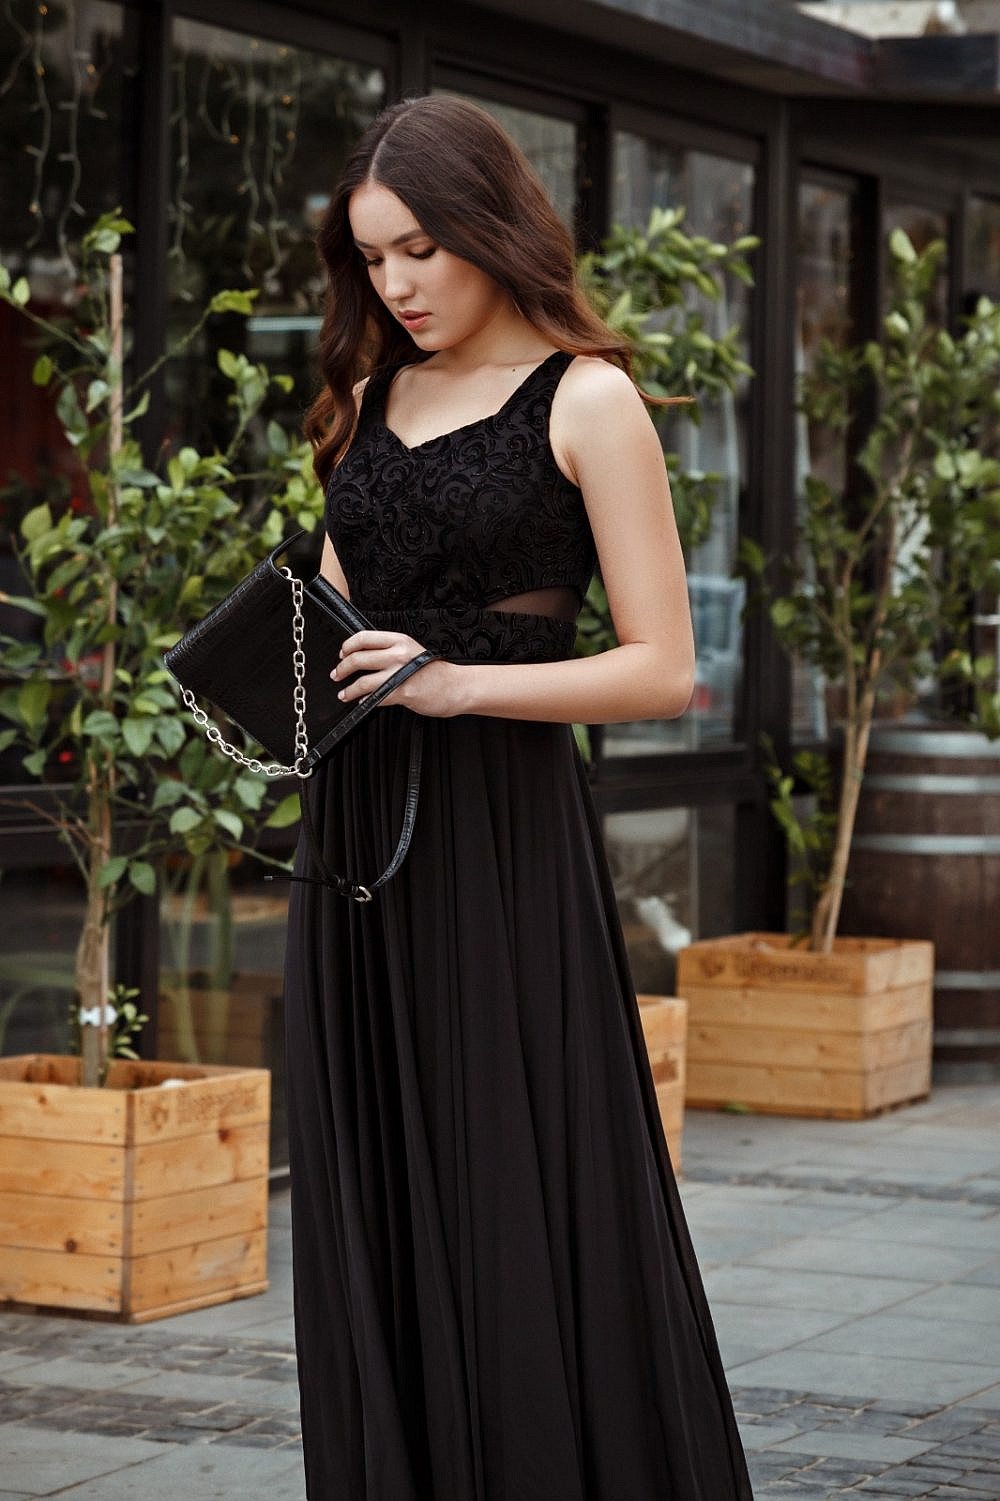 שמלה מרשת חנויות דנדשה. 50 ש״ח | צילום: יח״צ